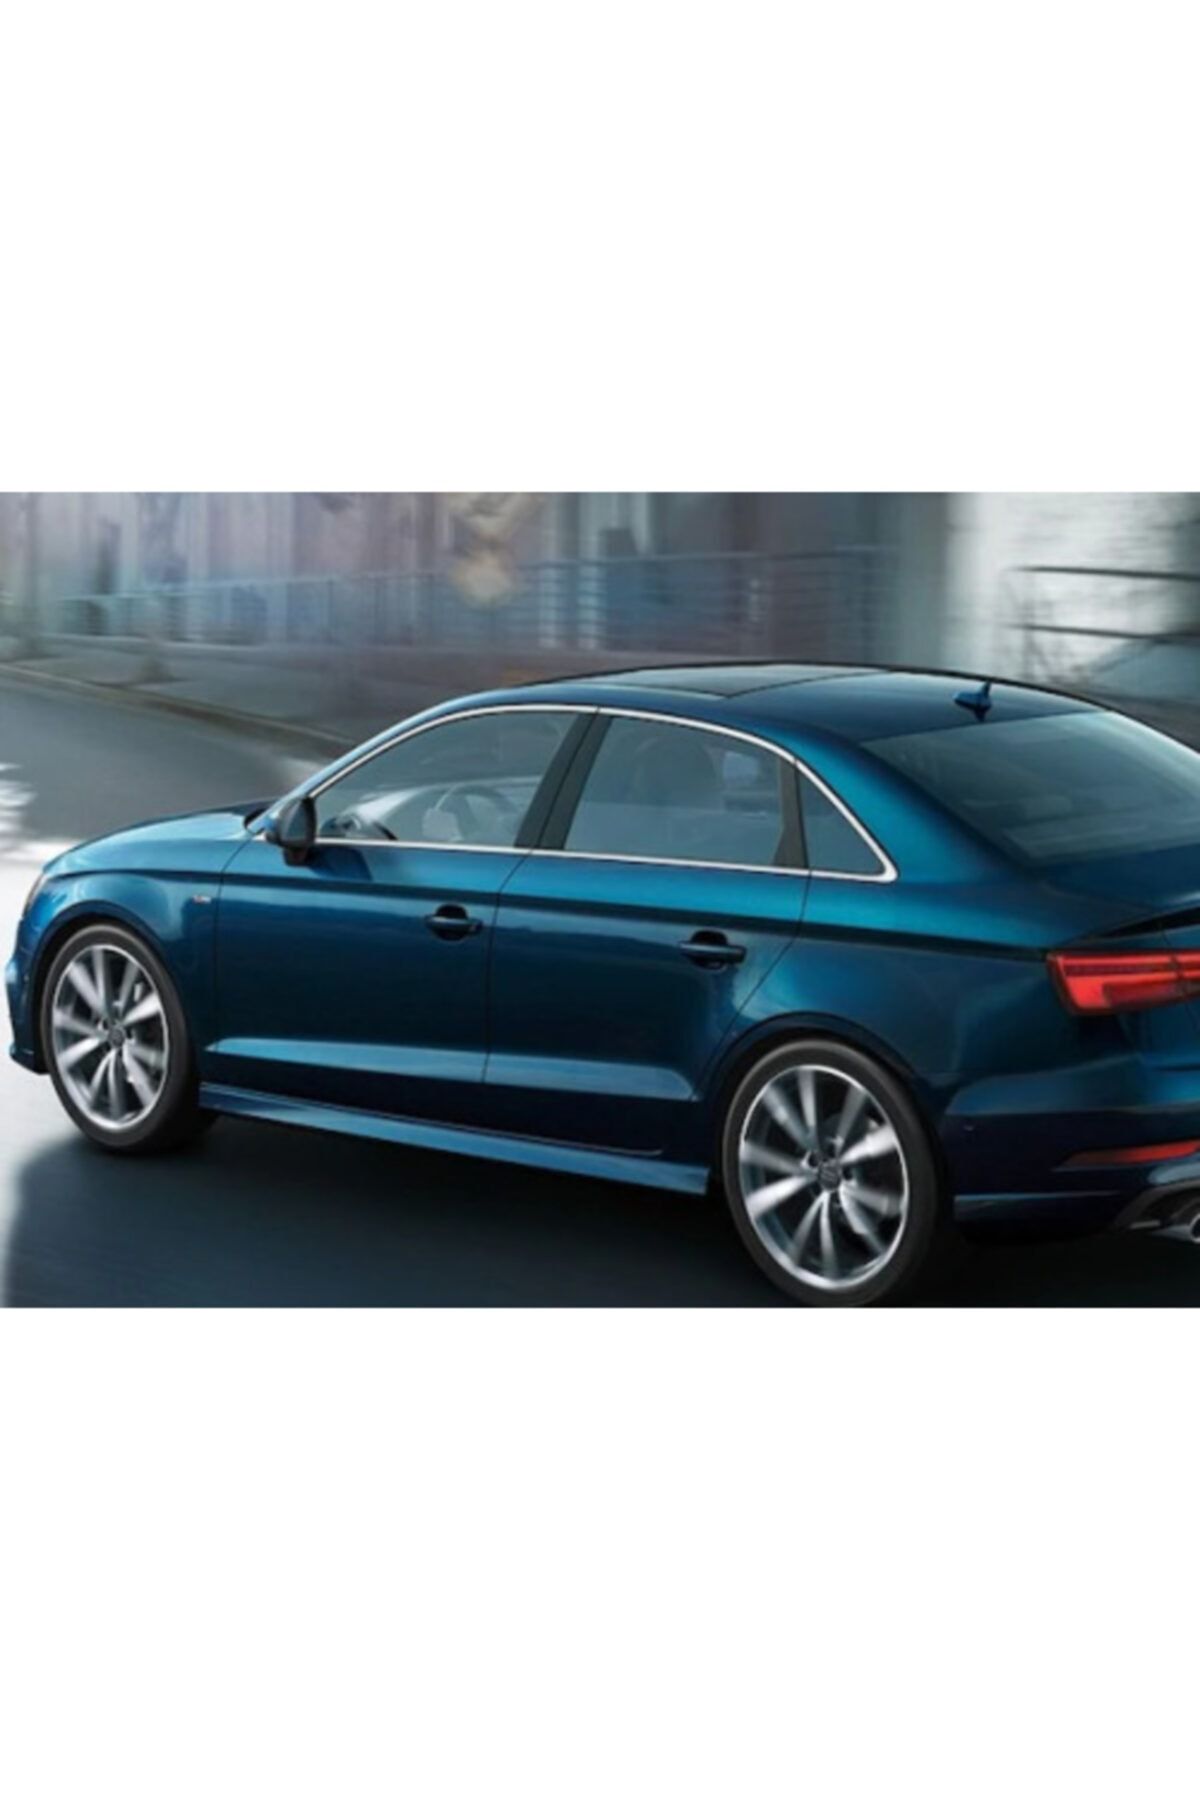 KNK Audi A3 Sedan Kasa Cam Çerçeve Kromu 2013 -2020 Yılları Arası Ve Sonrası Uyumlu